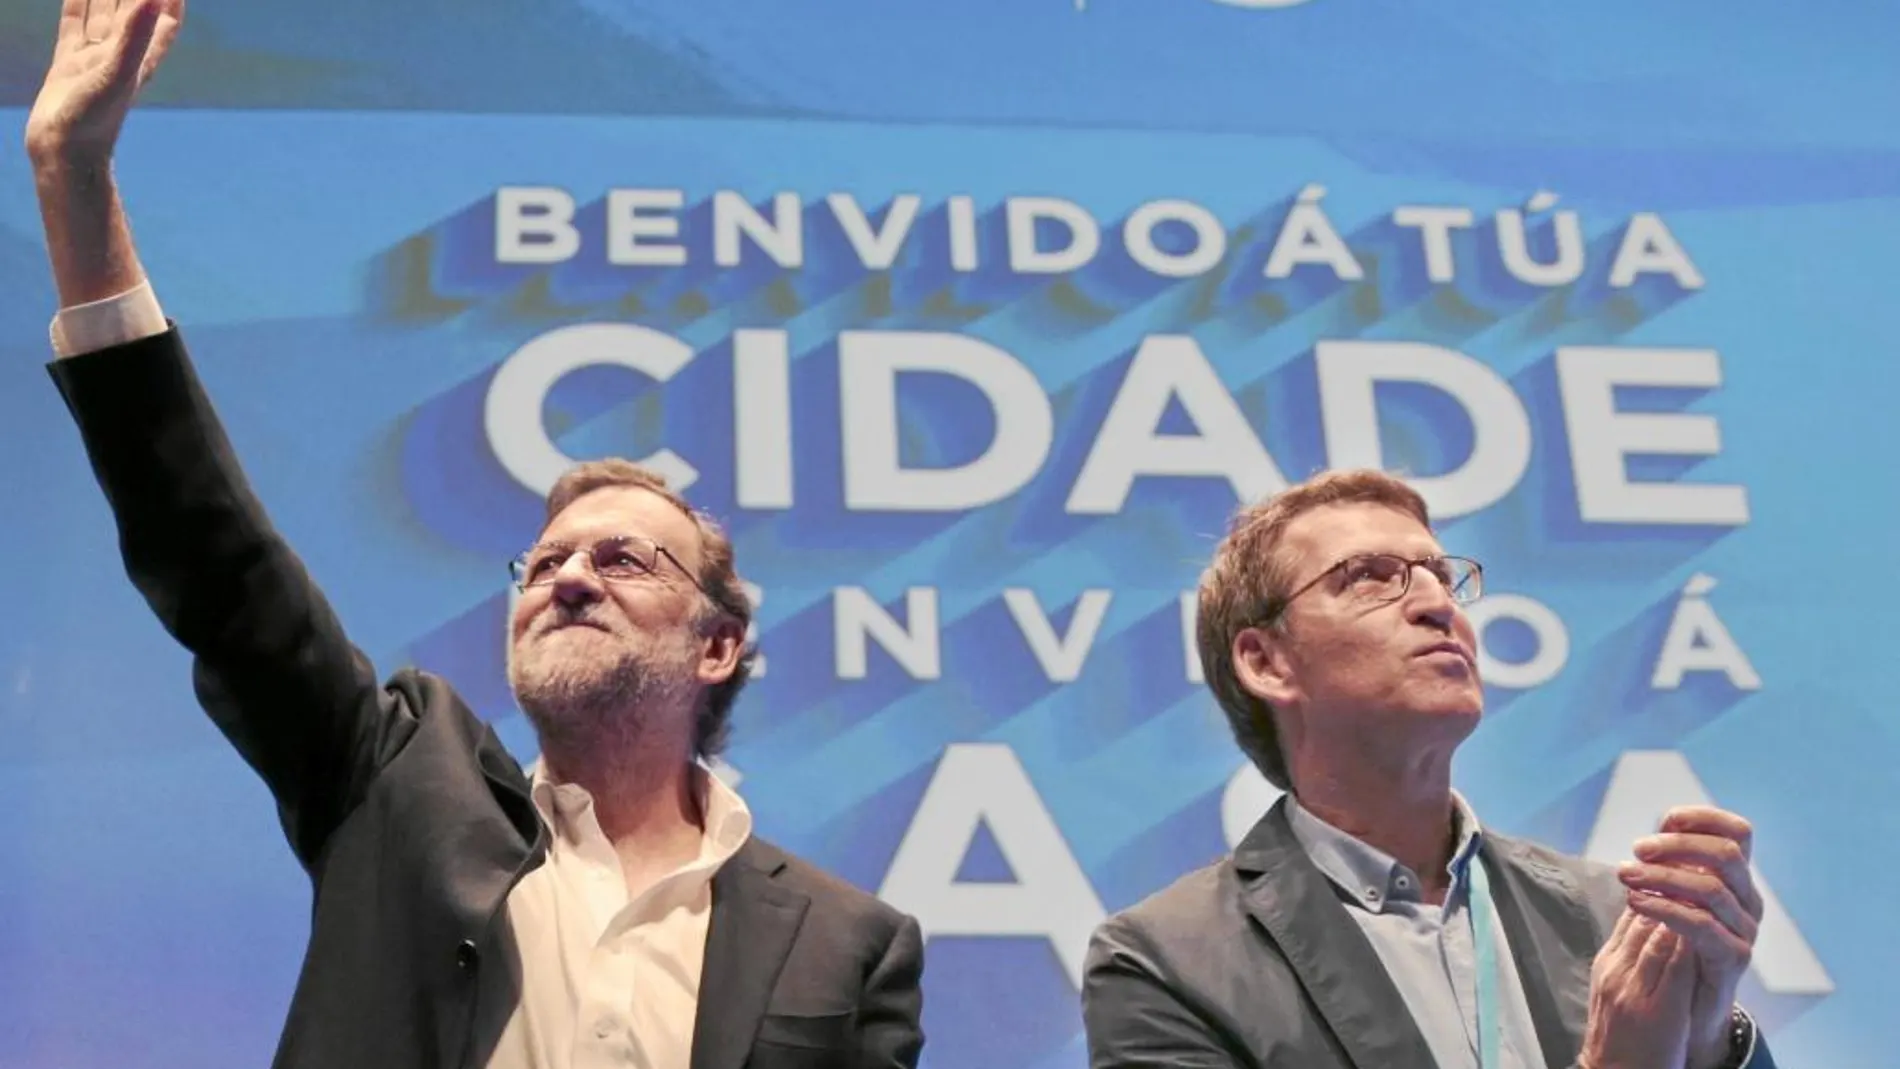 Persona muy grata. Rajoy fue ayer recibido con aplausos en Pontevedra, donde acudió a un acto con Feijóo